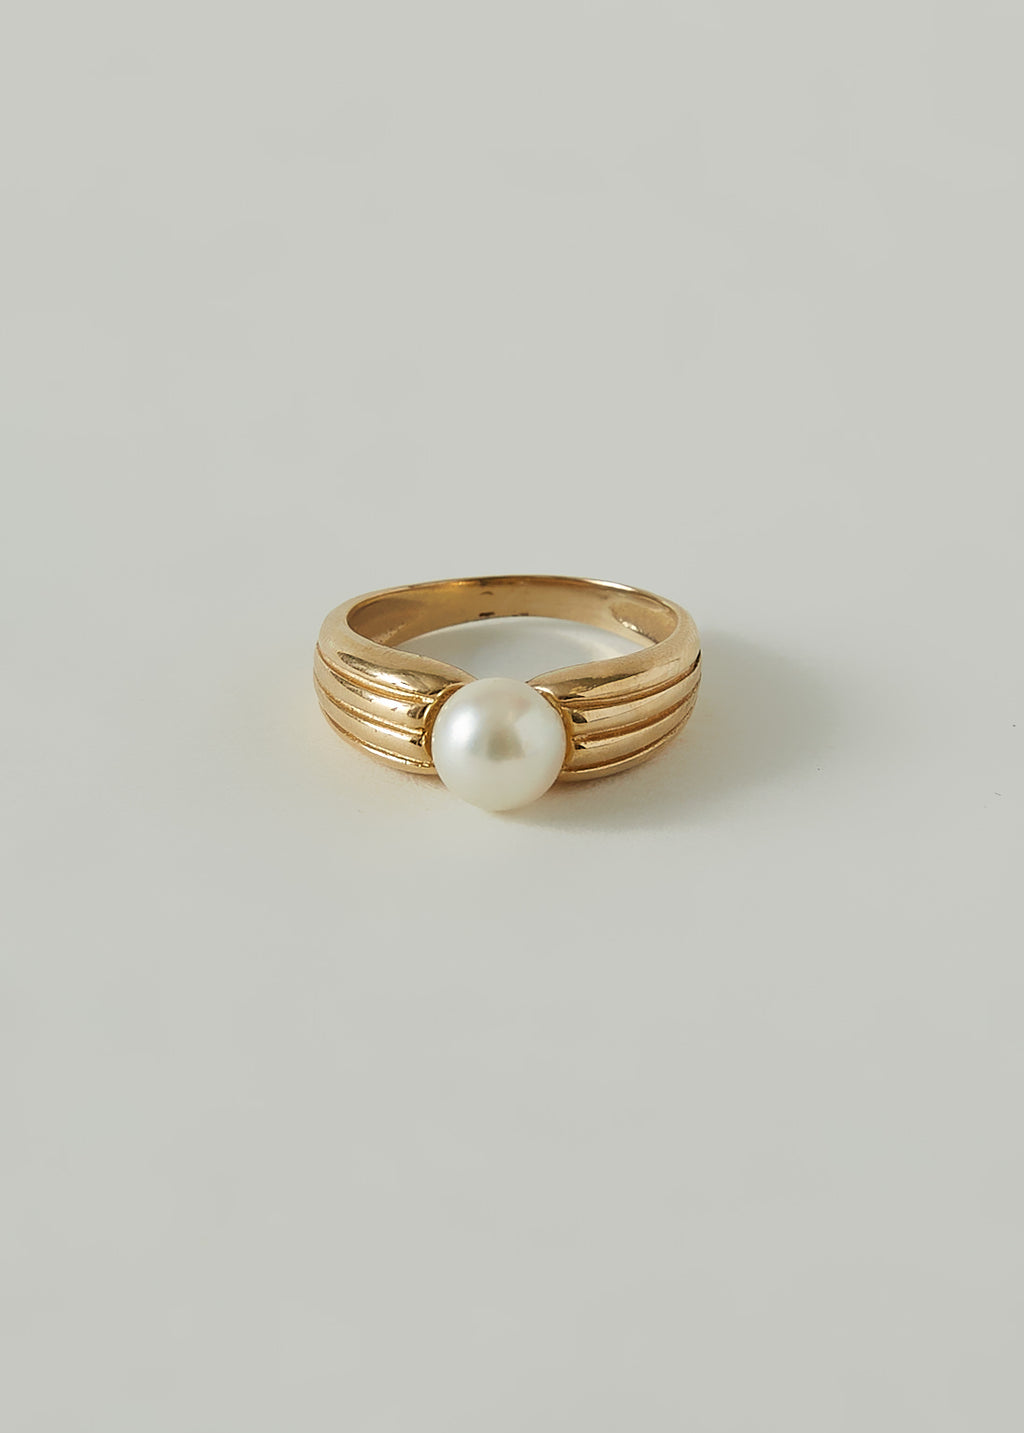 alt="Vintage Ribbed Pearl Signet Ring"